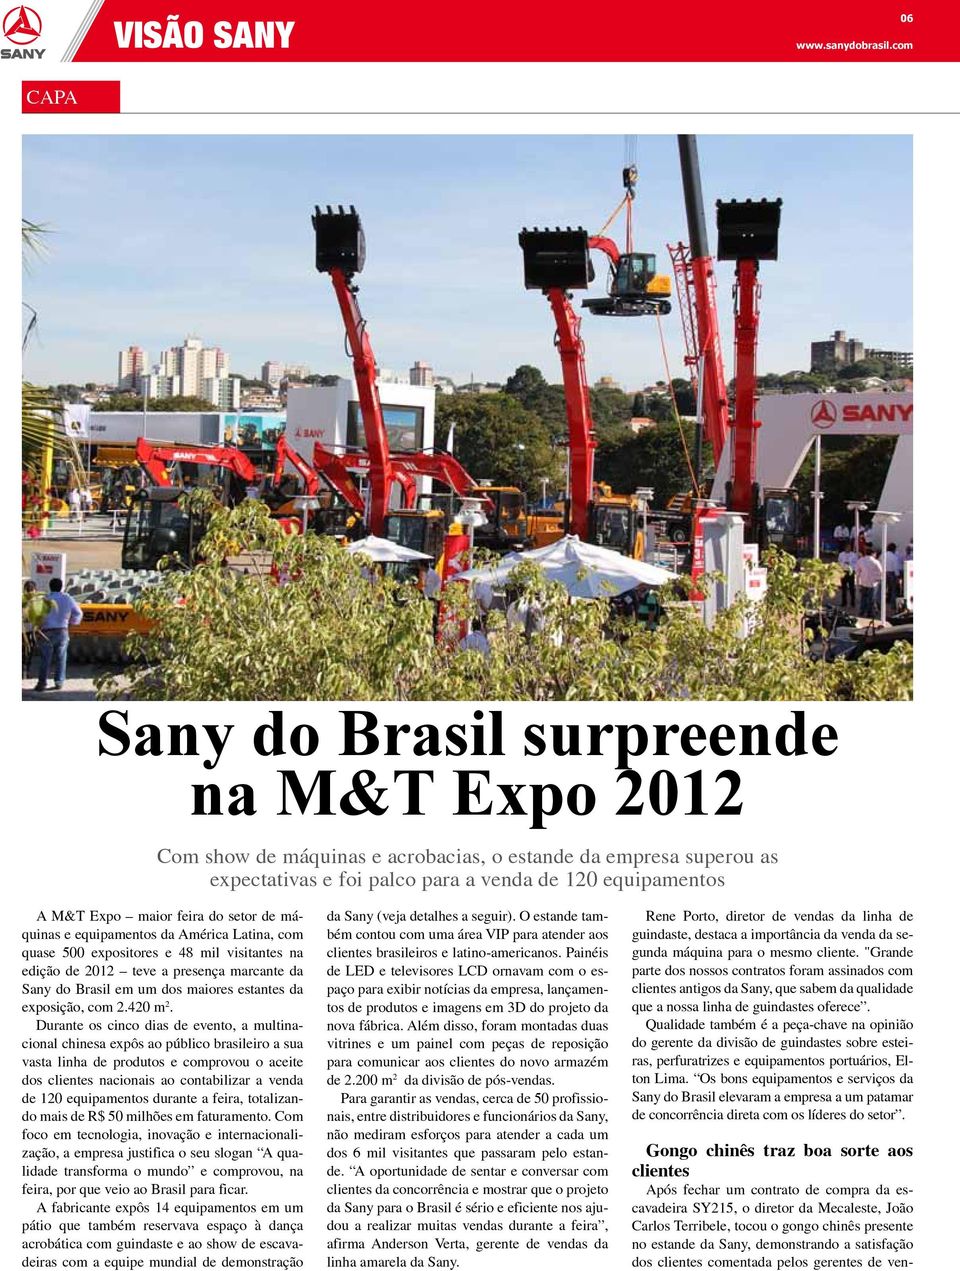 do setor de máquinas e equipamentos da América Latina, com quase 500 expositores e 48 mil visitantes na edição de 2012 teve a presença marcante da Sany do Brasil em um dos maiores estantes da